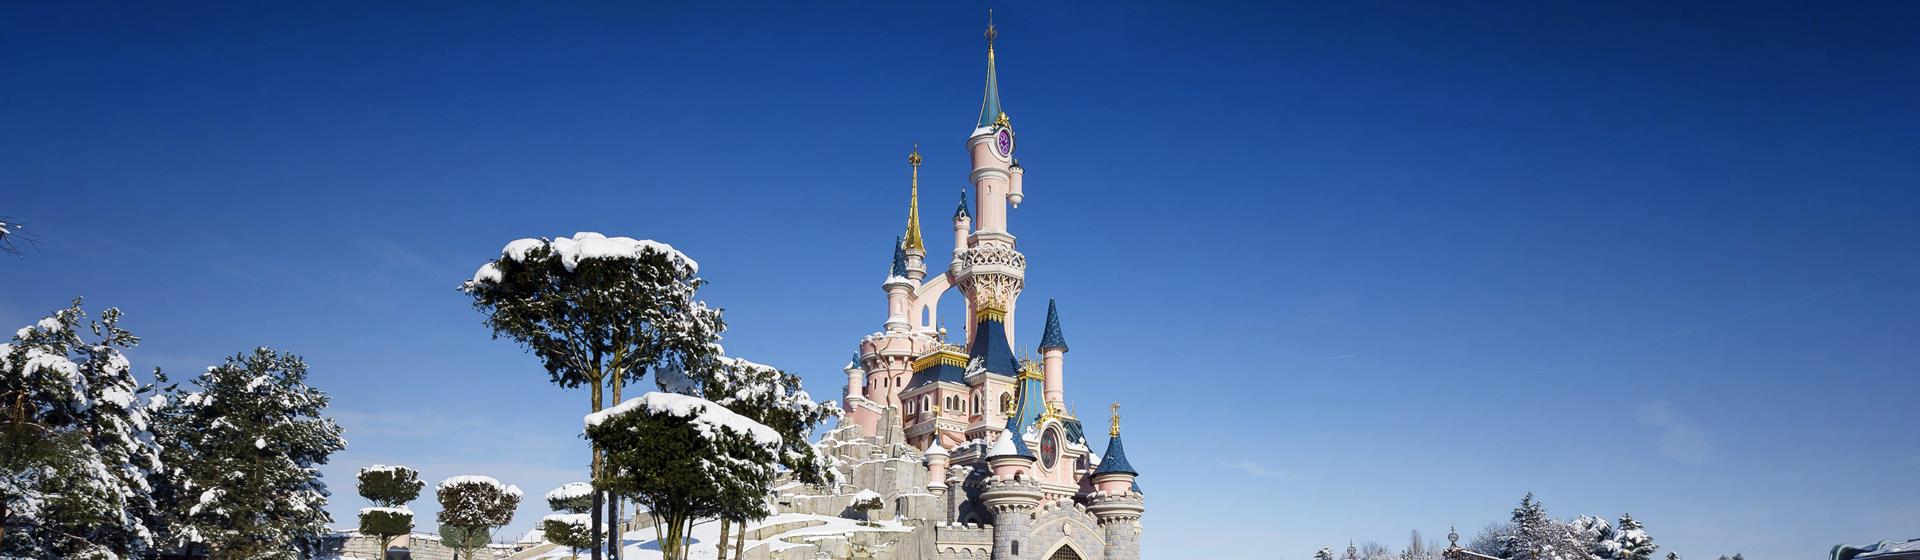 Disneyland Paris Winter Deals